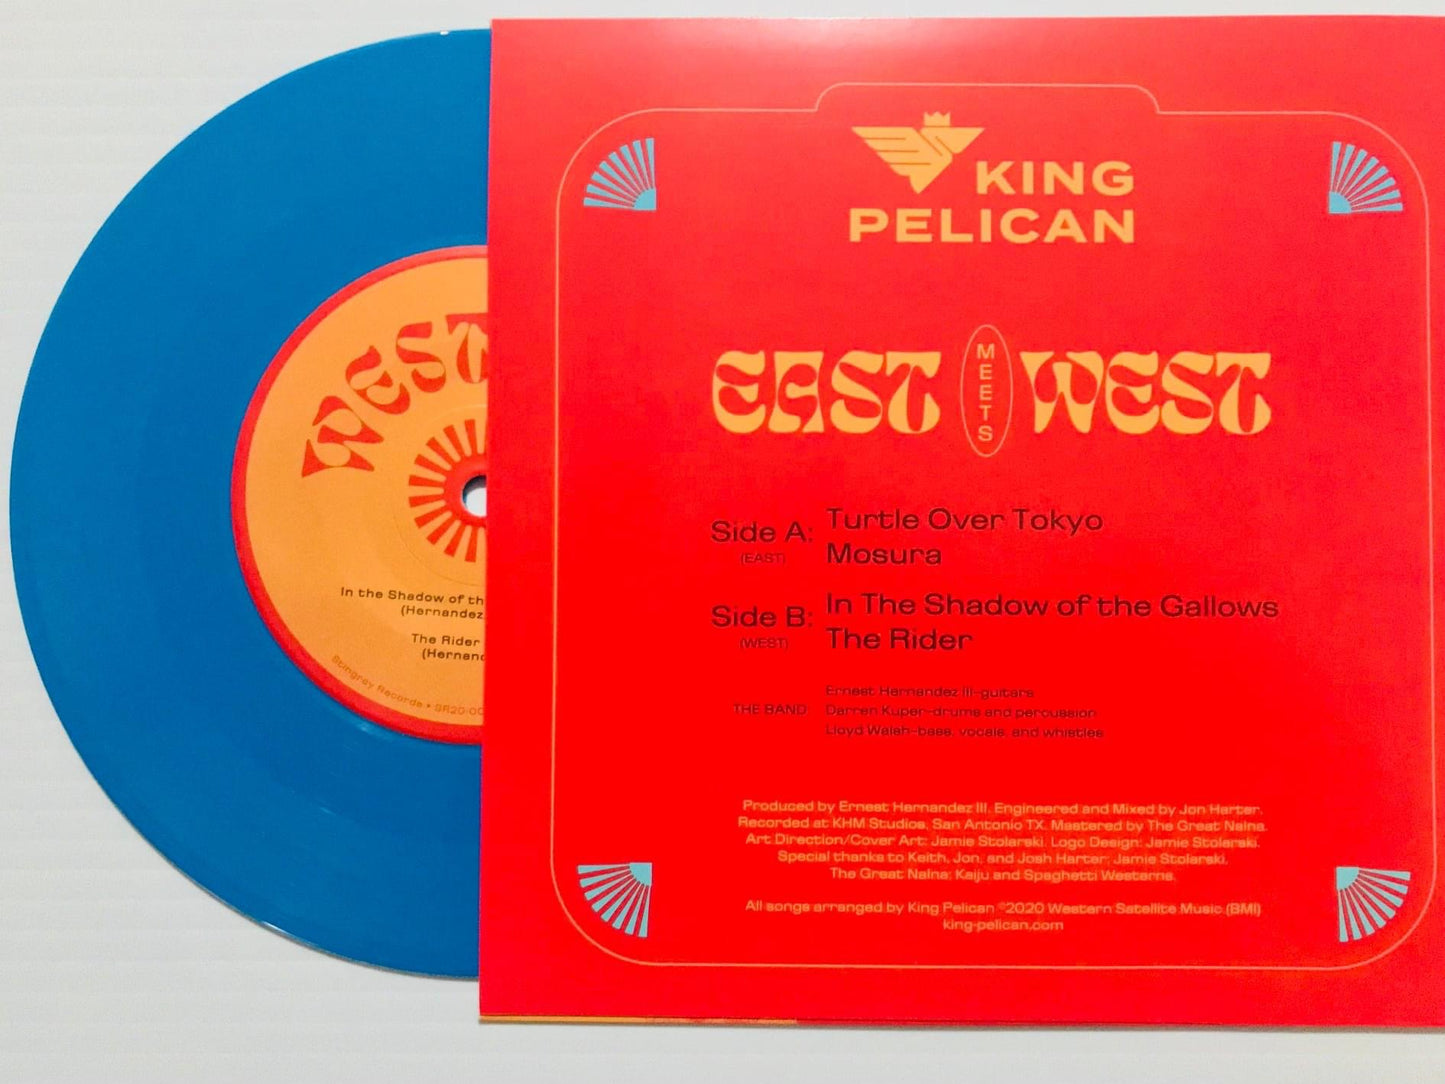 OMRDST-039 King Pelican “East Meets West” 7” EP (Blue Vinyl)